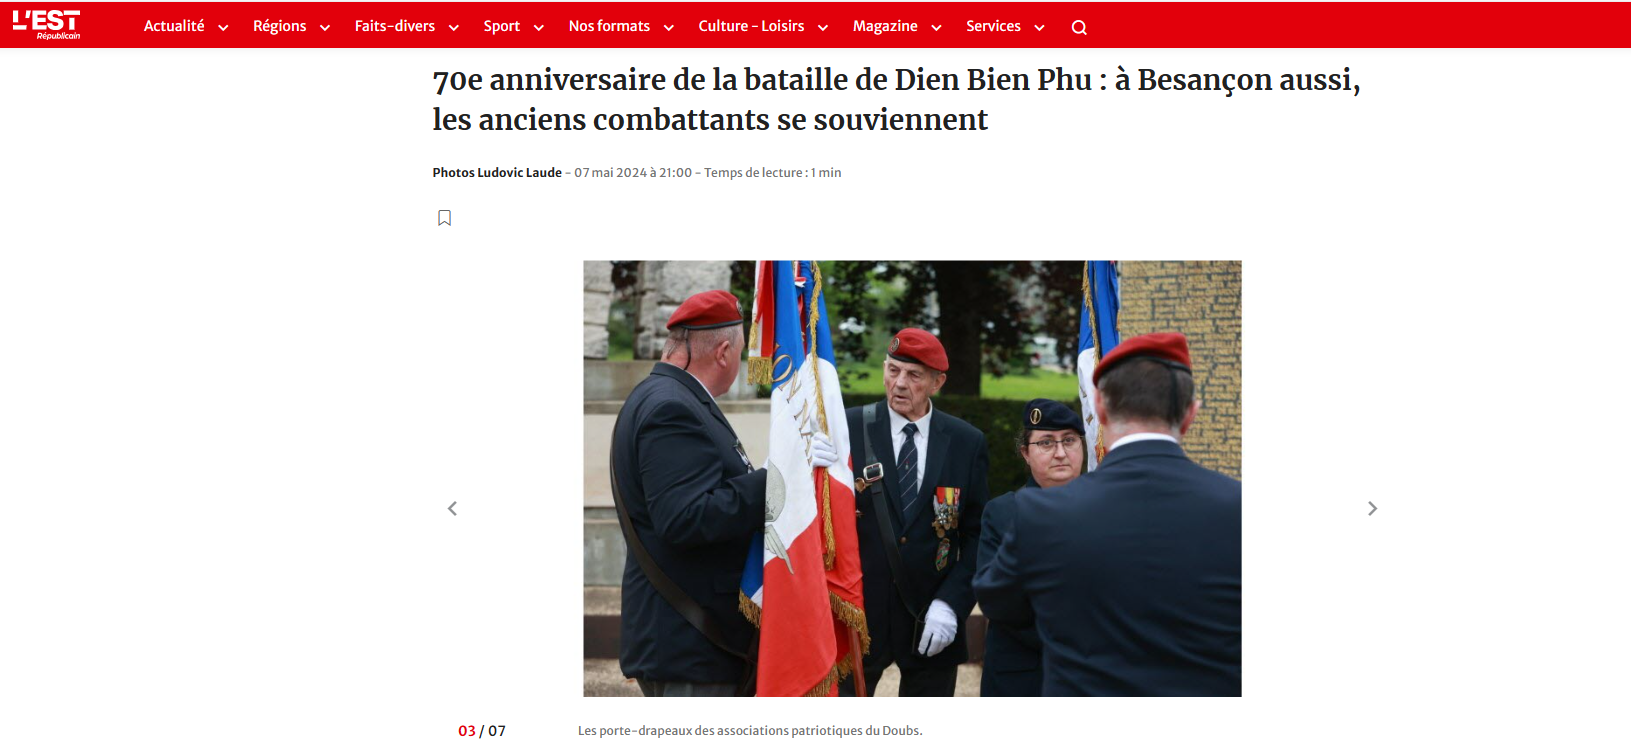 Bài báo trên báo L'Est Républicain về buổi lễ kỷ niệm 70 năm Điện Biên Phủ tại thành phố Besançon, Pháp nơi tác giả đang sinh sống và làm việc